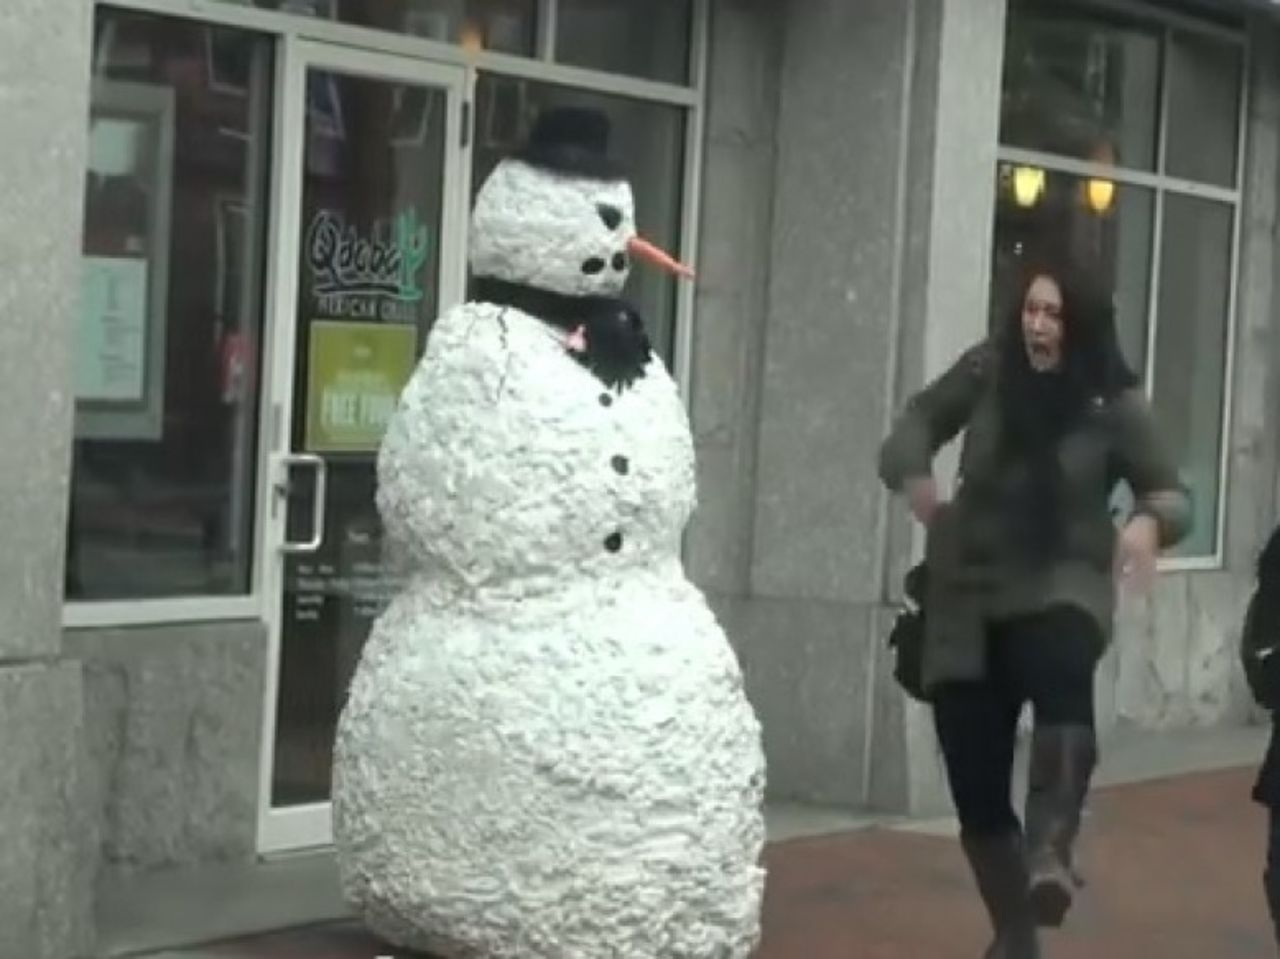 El gemelo malvado de Frosty, el muñeco de nieve, llegó a las calles de Boston este año para dar un poco de miedo en Navidad. La broma anual de las fiestas comenzó entre dos amigos en 2011, y el vídeo de este año ahora tiene más de 2.3 millones de visitas en YouTube. 